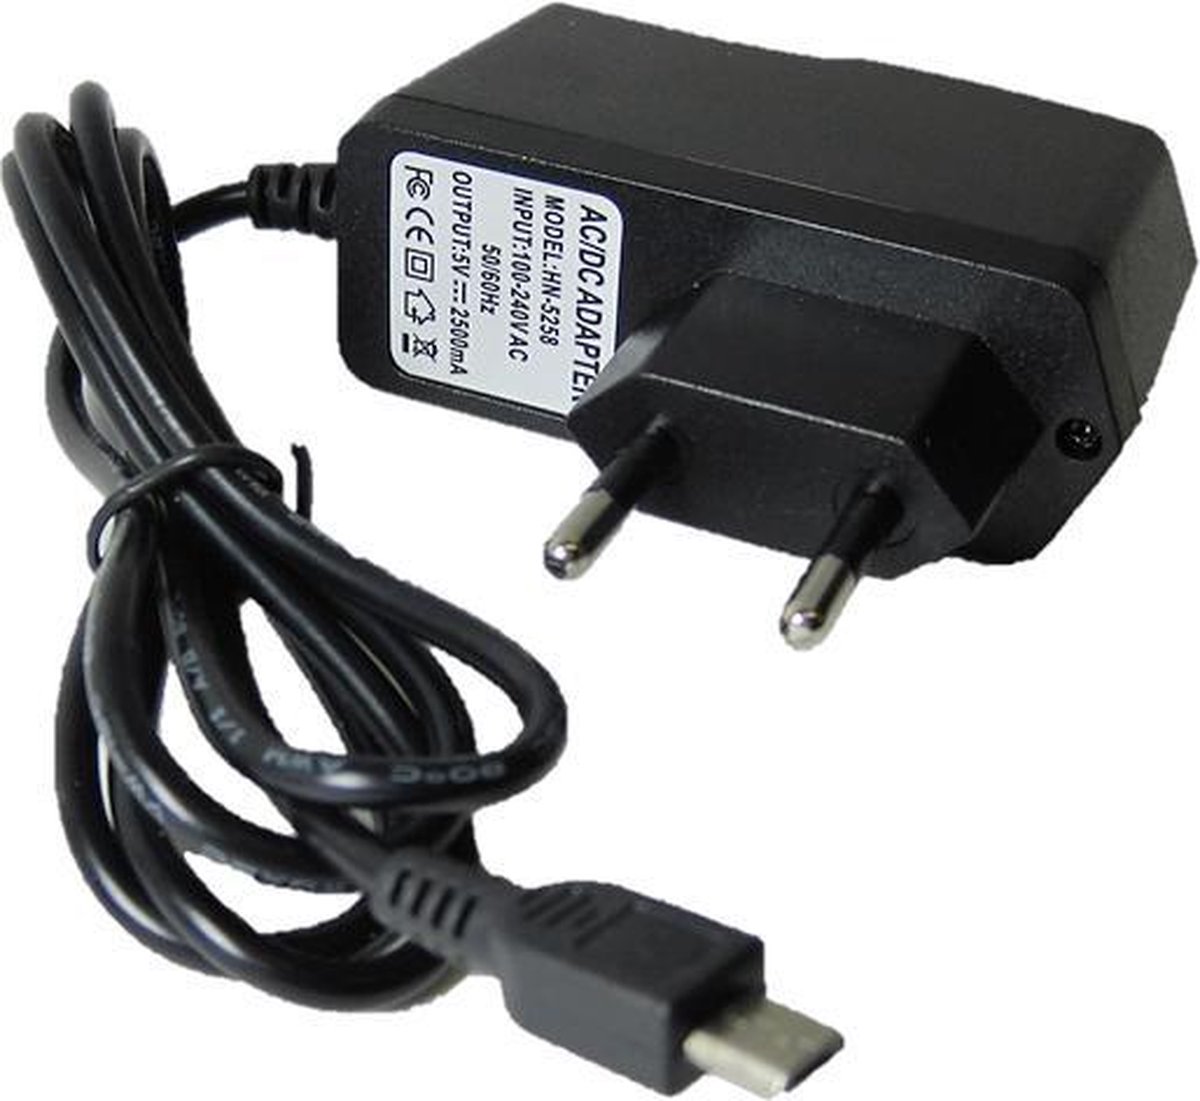 5V 2,5A power supply voedingsadapter 2500mA micro-USB met EU stekker voor o.a. Raspberry Pi 3 en 3B+ - Merkloos